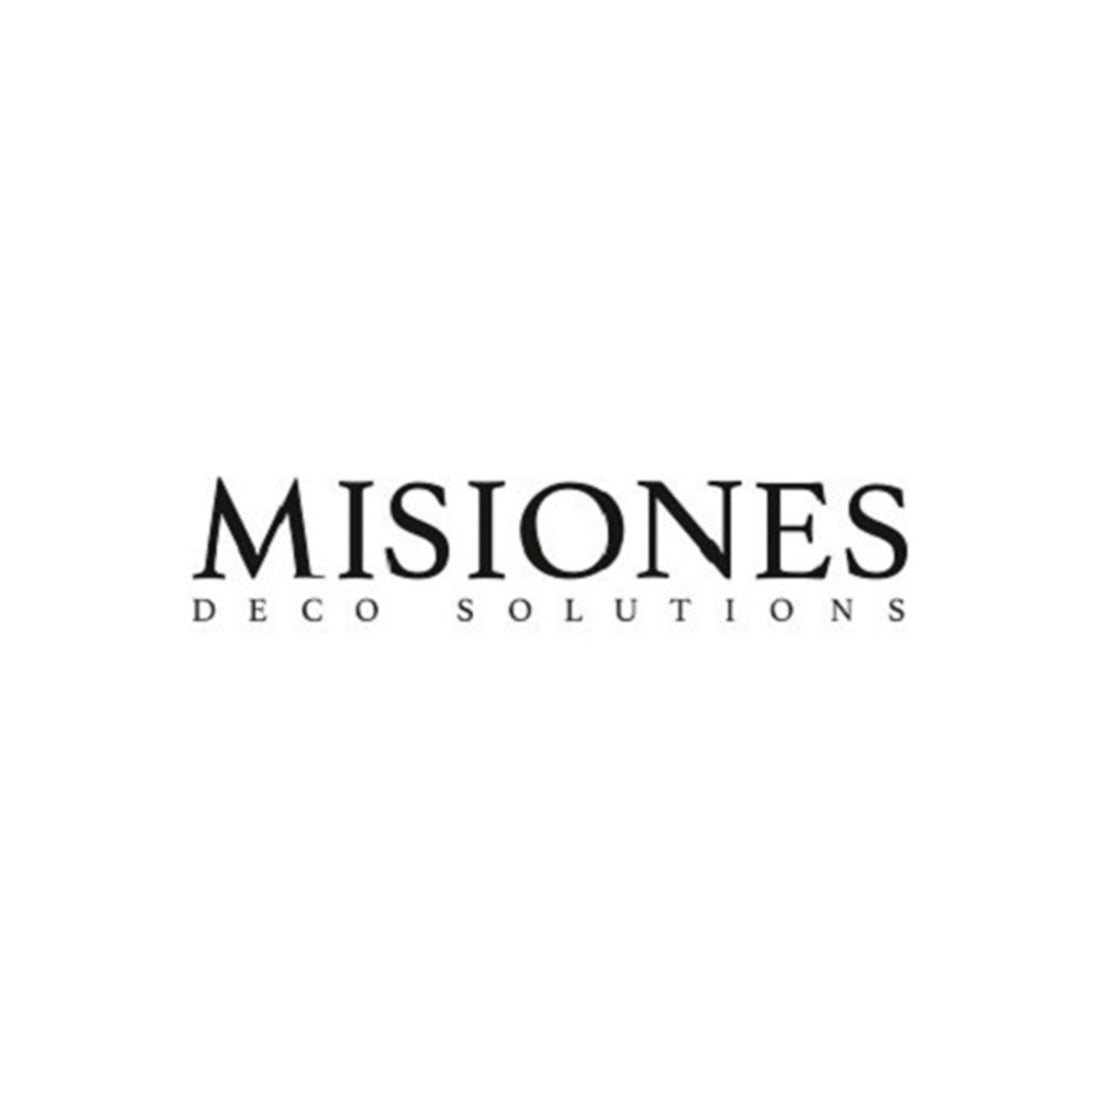 ¿Dónde conseguir todos los productos de Misiones Deco en Buenos Aires?